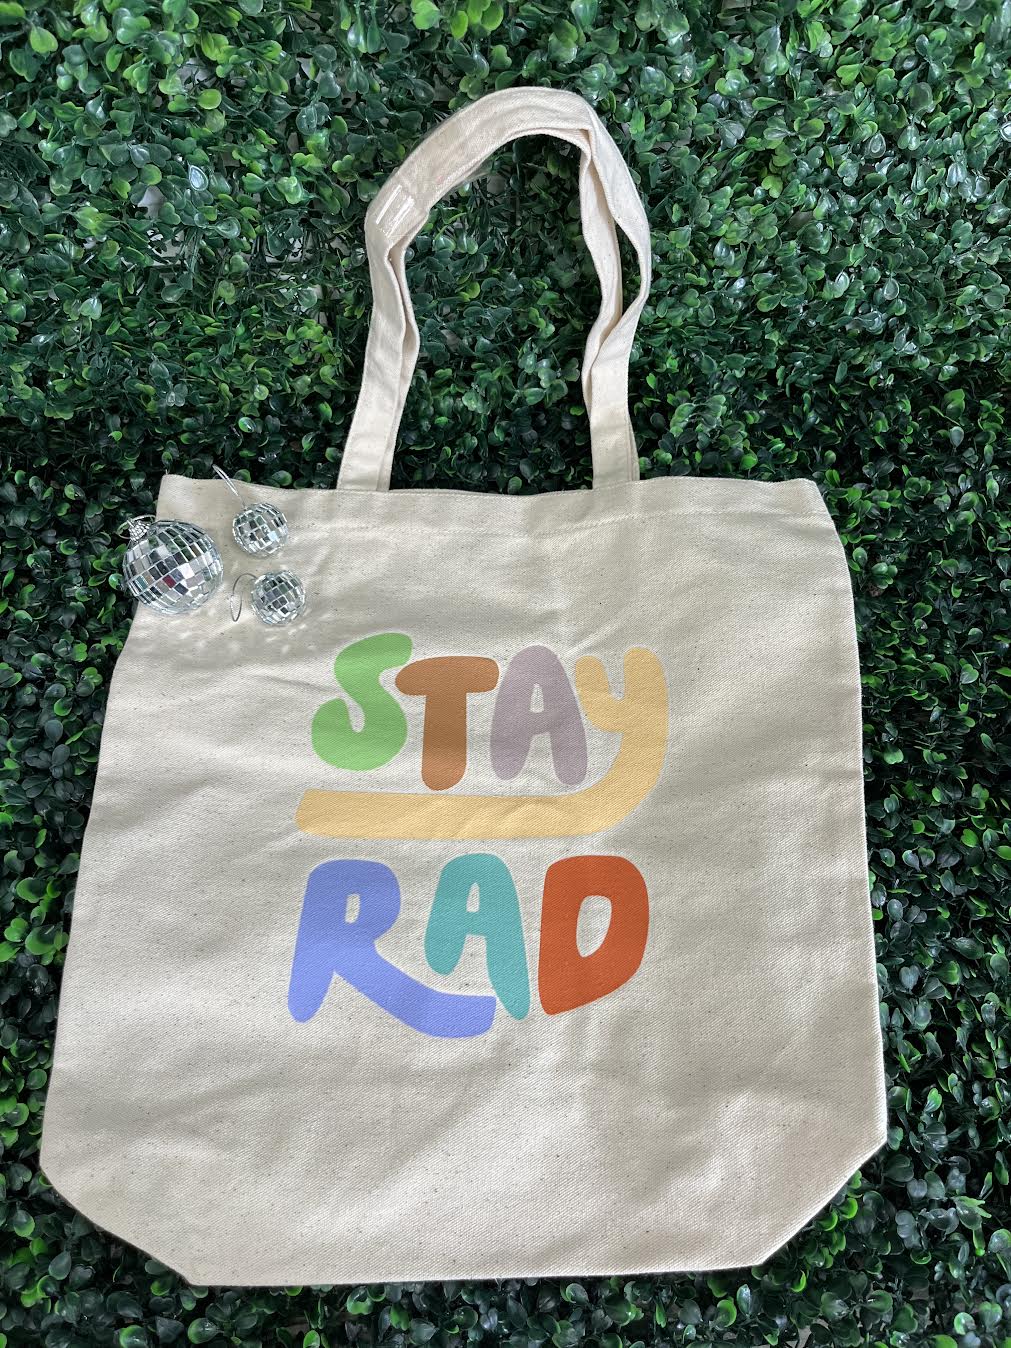 Always "Stay Rad" Tote Bag